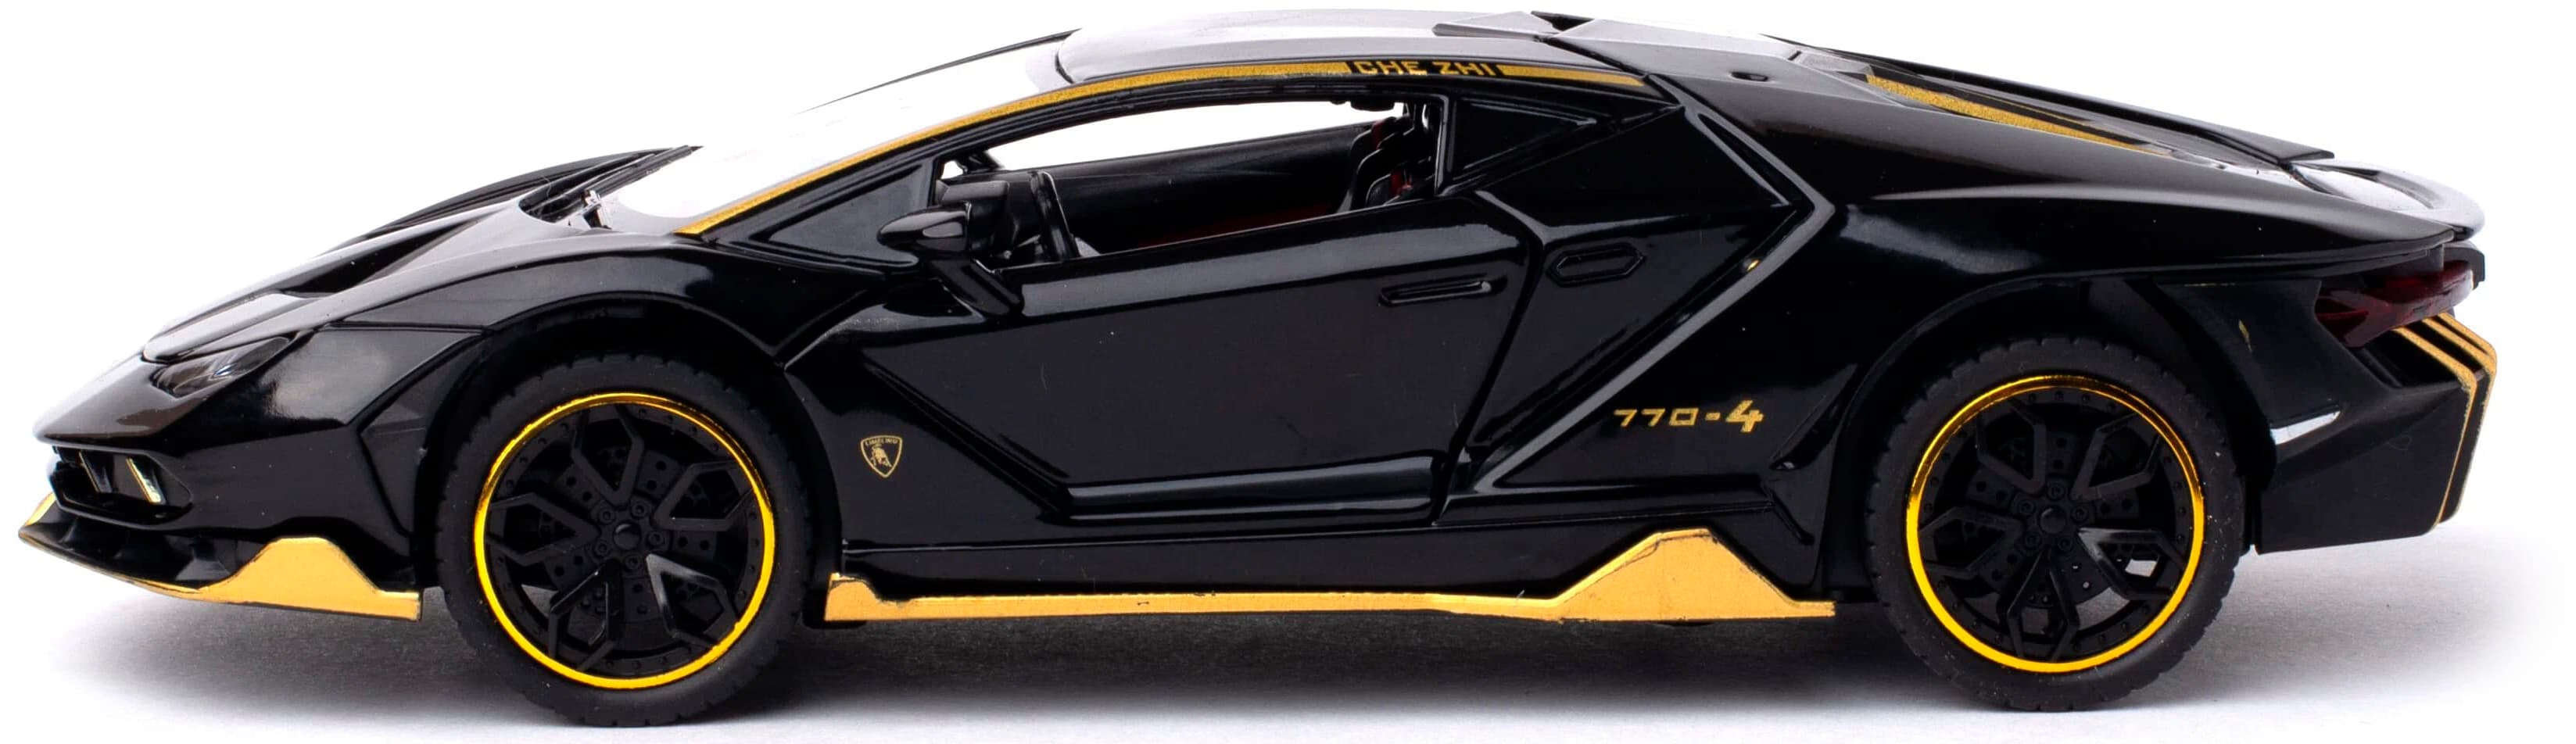 Металлическая машинка Che Zhi 1:24 «Lamborghini Centenario LP770-4» CZ25A, 21 см. инерционная, свет, звук / Черный